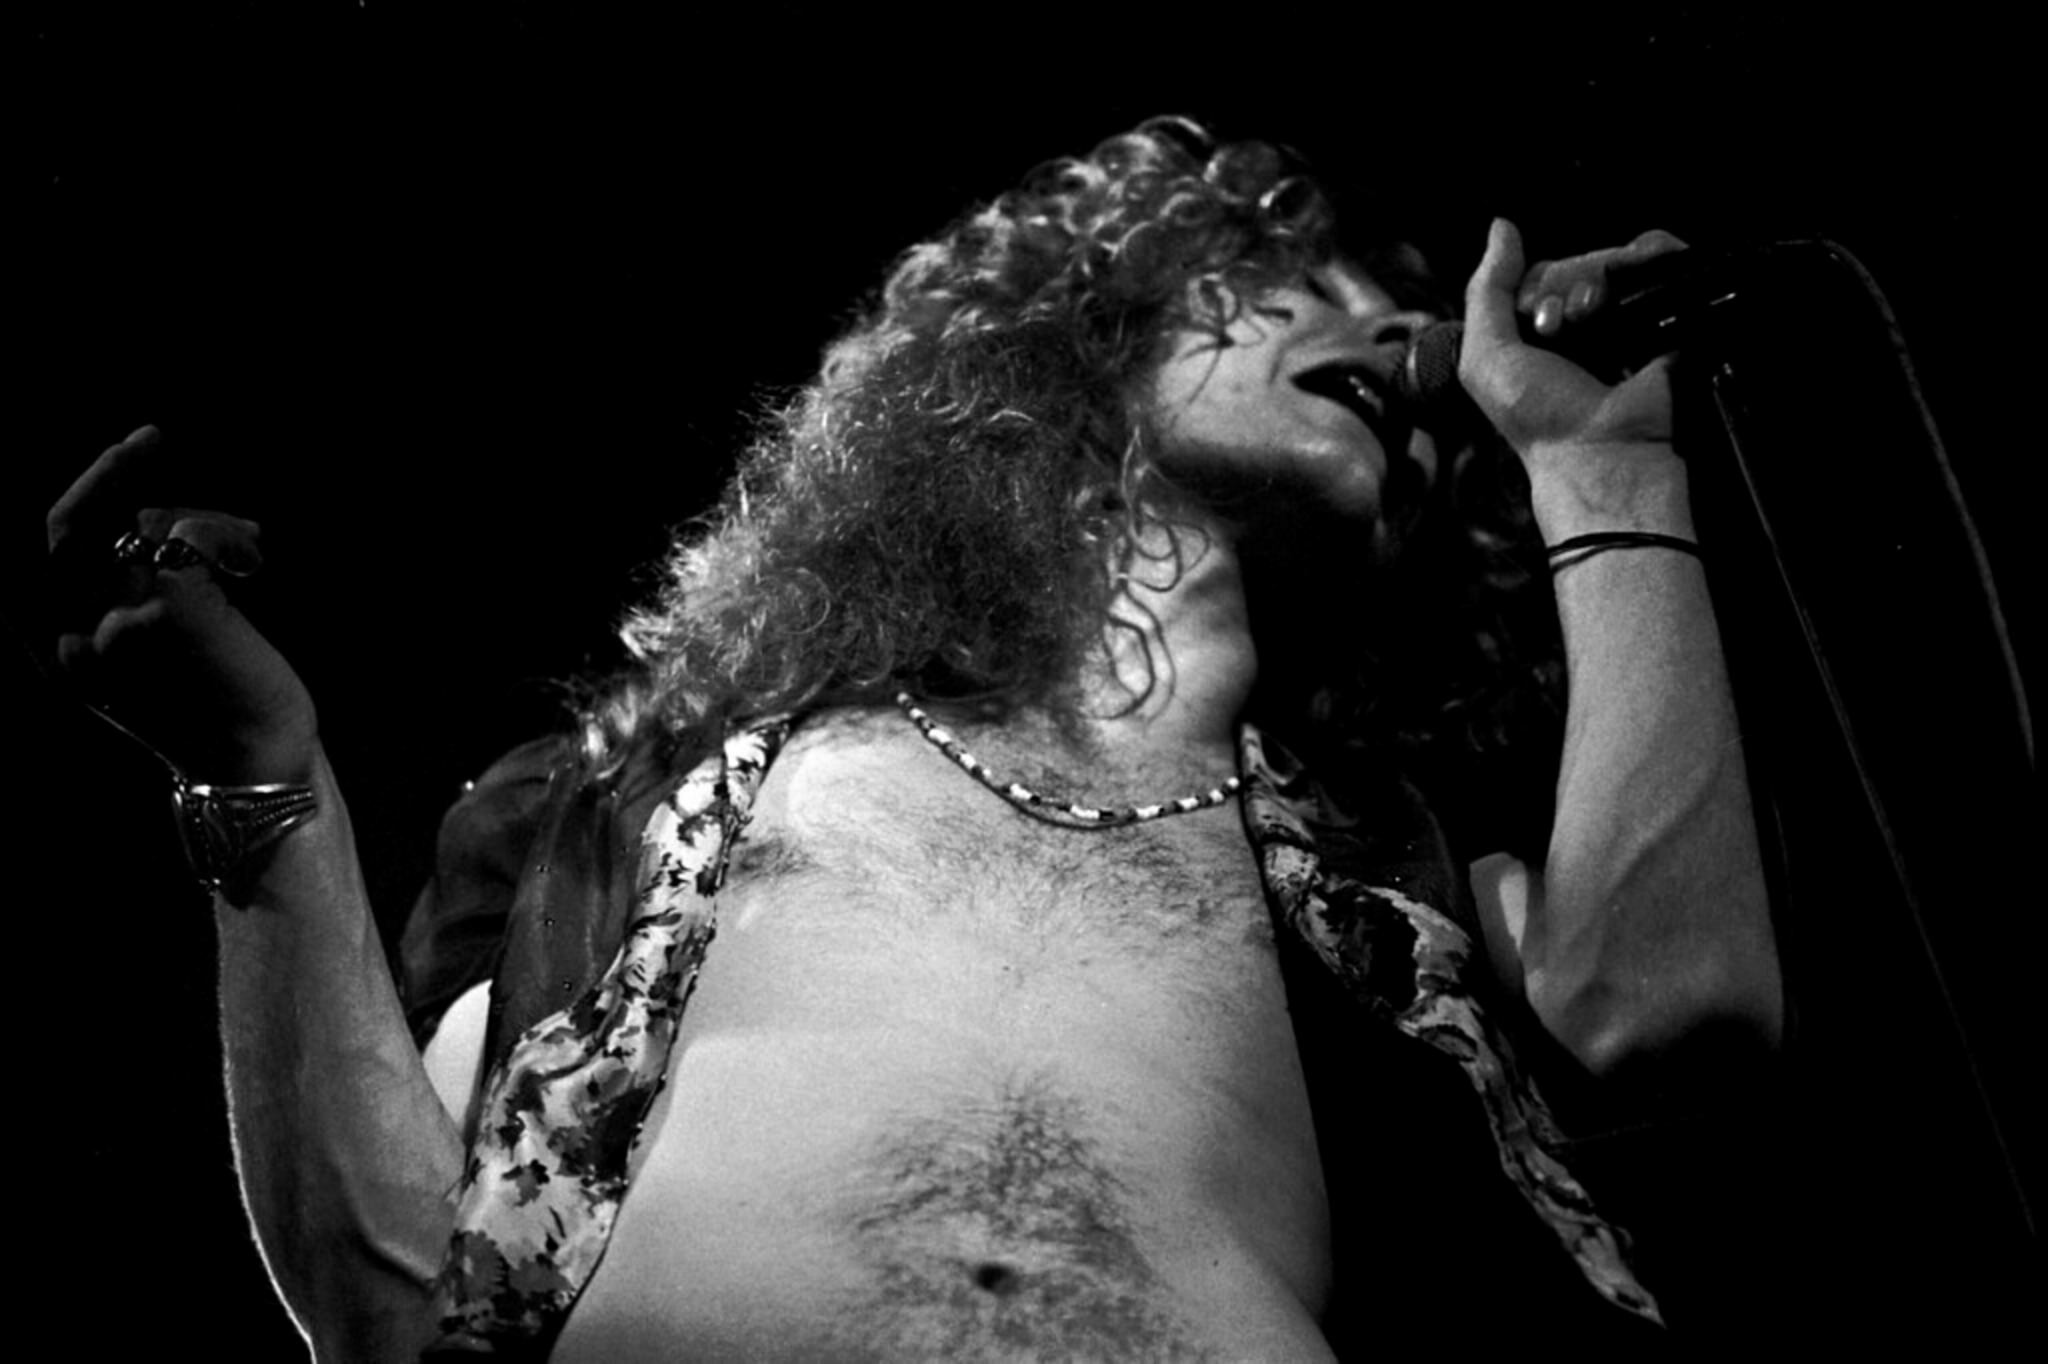 Led Zeppelin's Robert Plant singing